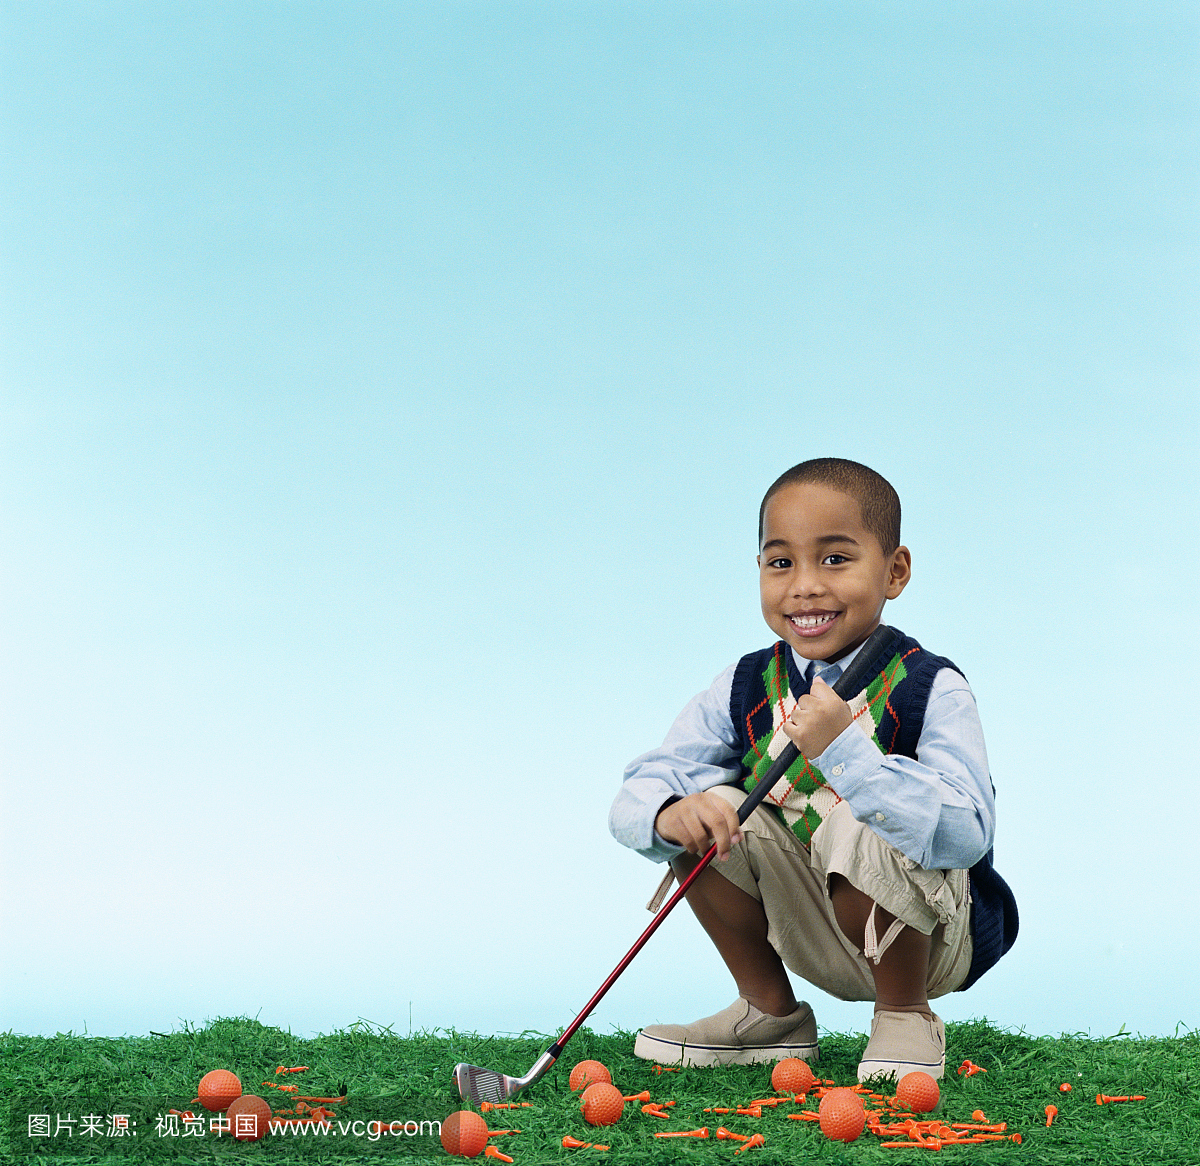 男孩(5-7)拿着高尔夫球杆,蹲着球和三通,肖像